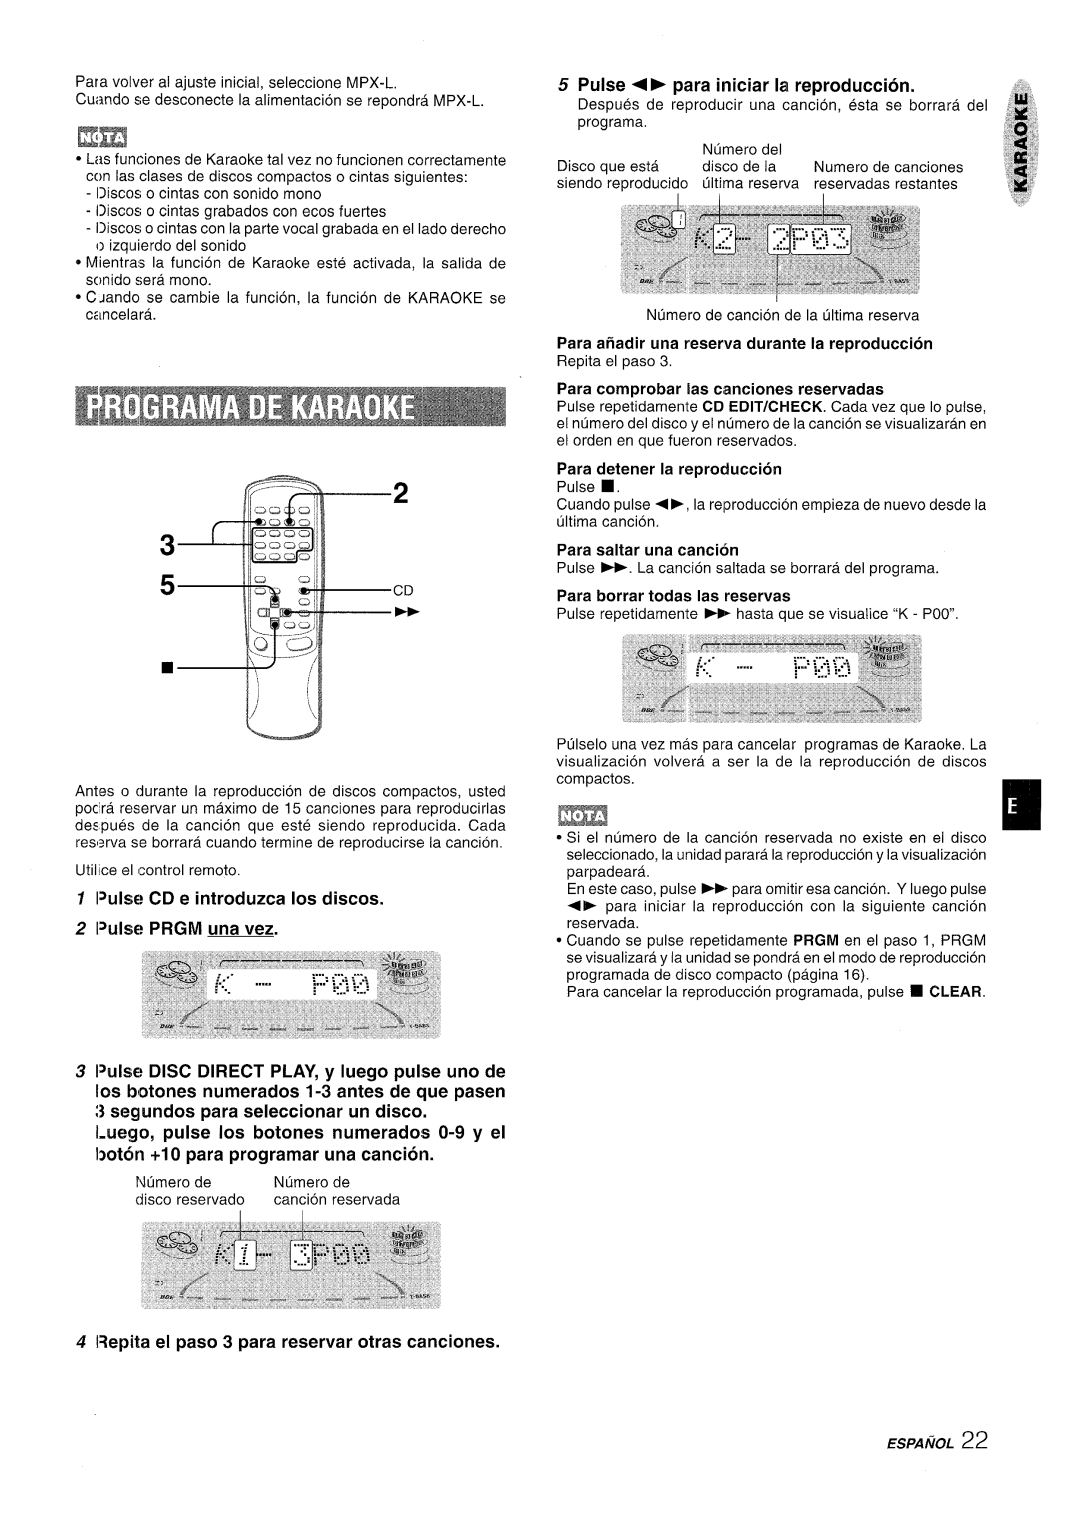 Aiwa NSX-A909 manual IRepita el paso 3 para reservar otras canciones, Pulse › para iniciar la reproduction, Para, Espanol 